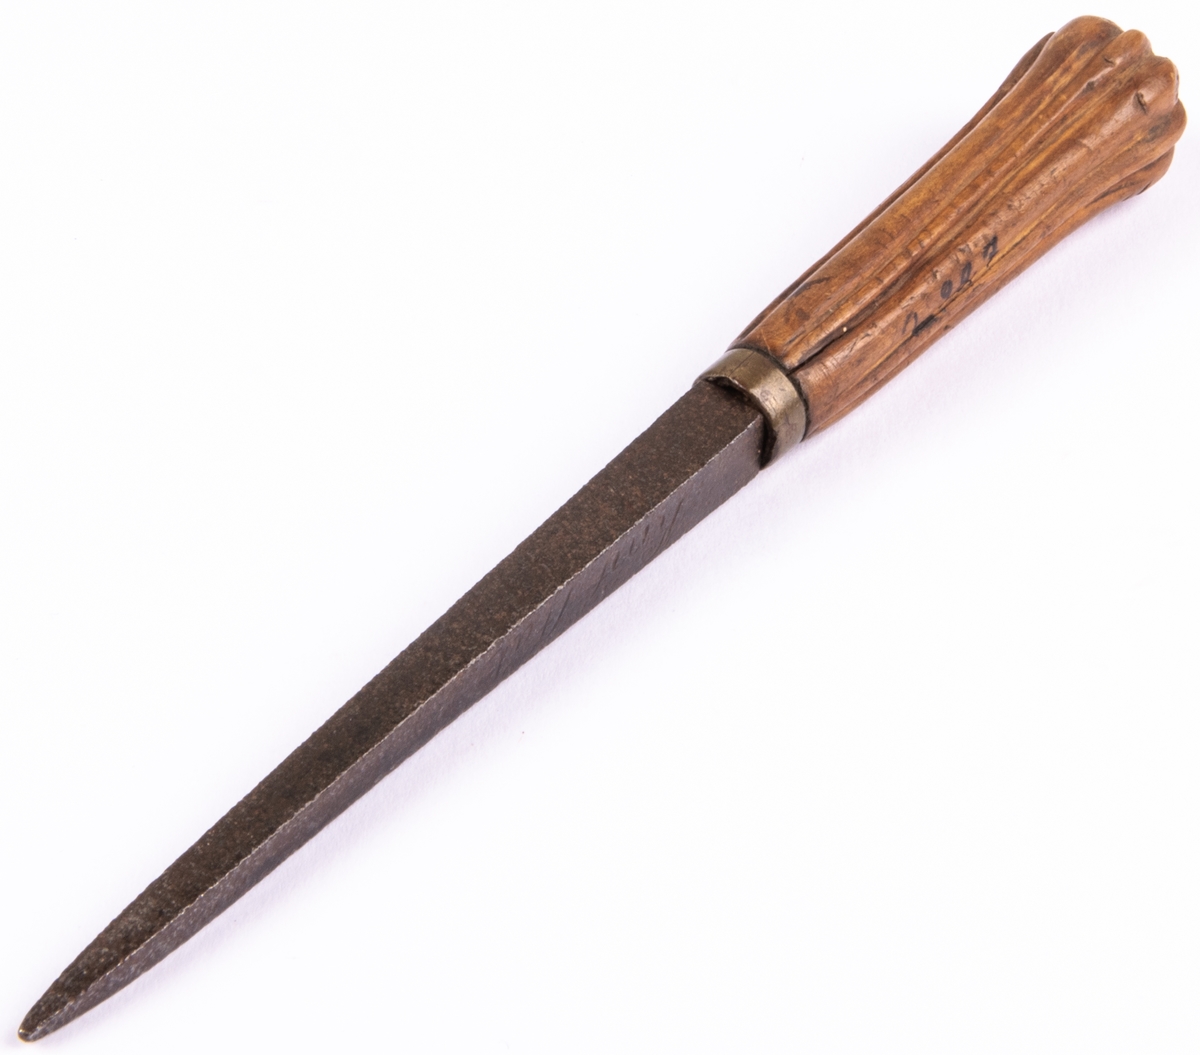 Bryne av stål på kort träskaft med längsgående ränder, rokoko. Märkt: "Knif Stål Åhr 1770".